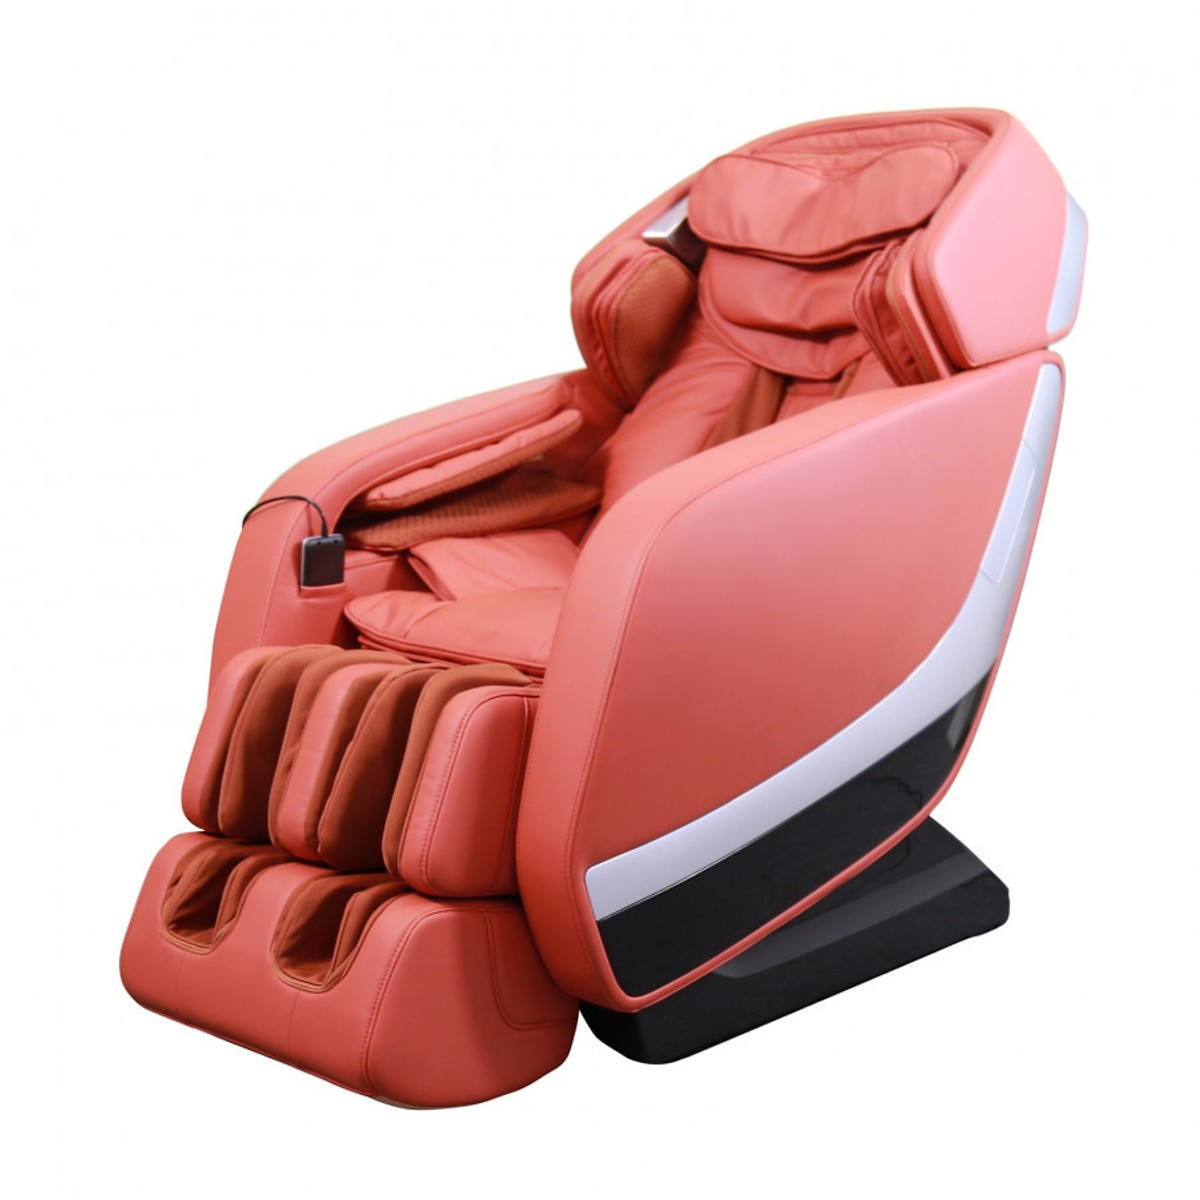 ghế massage giá rẻ chính hãng kachi 7909